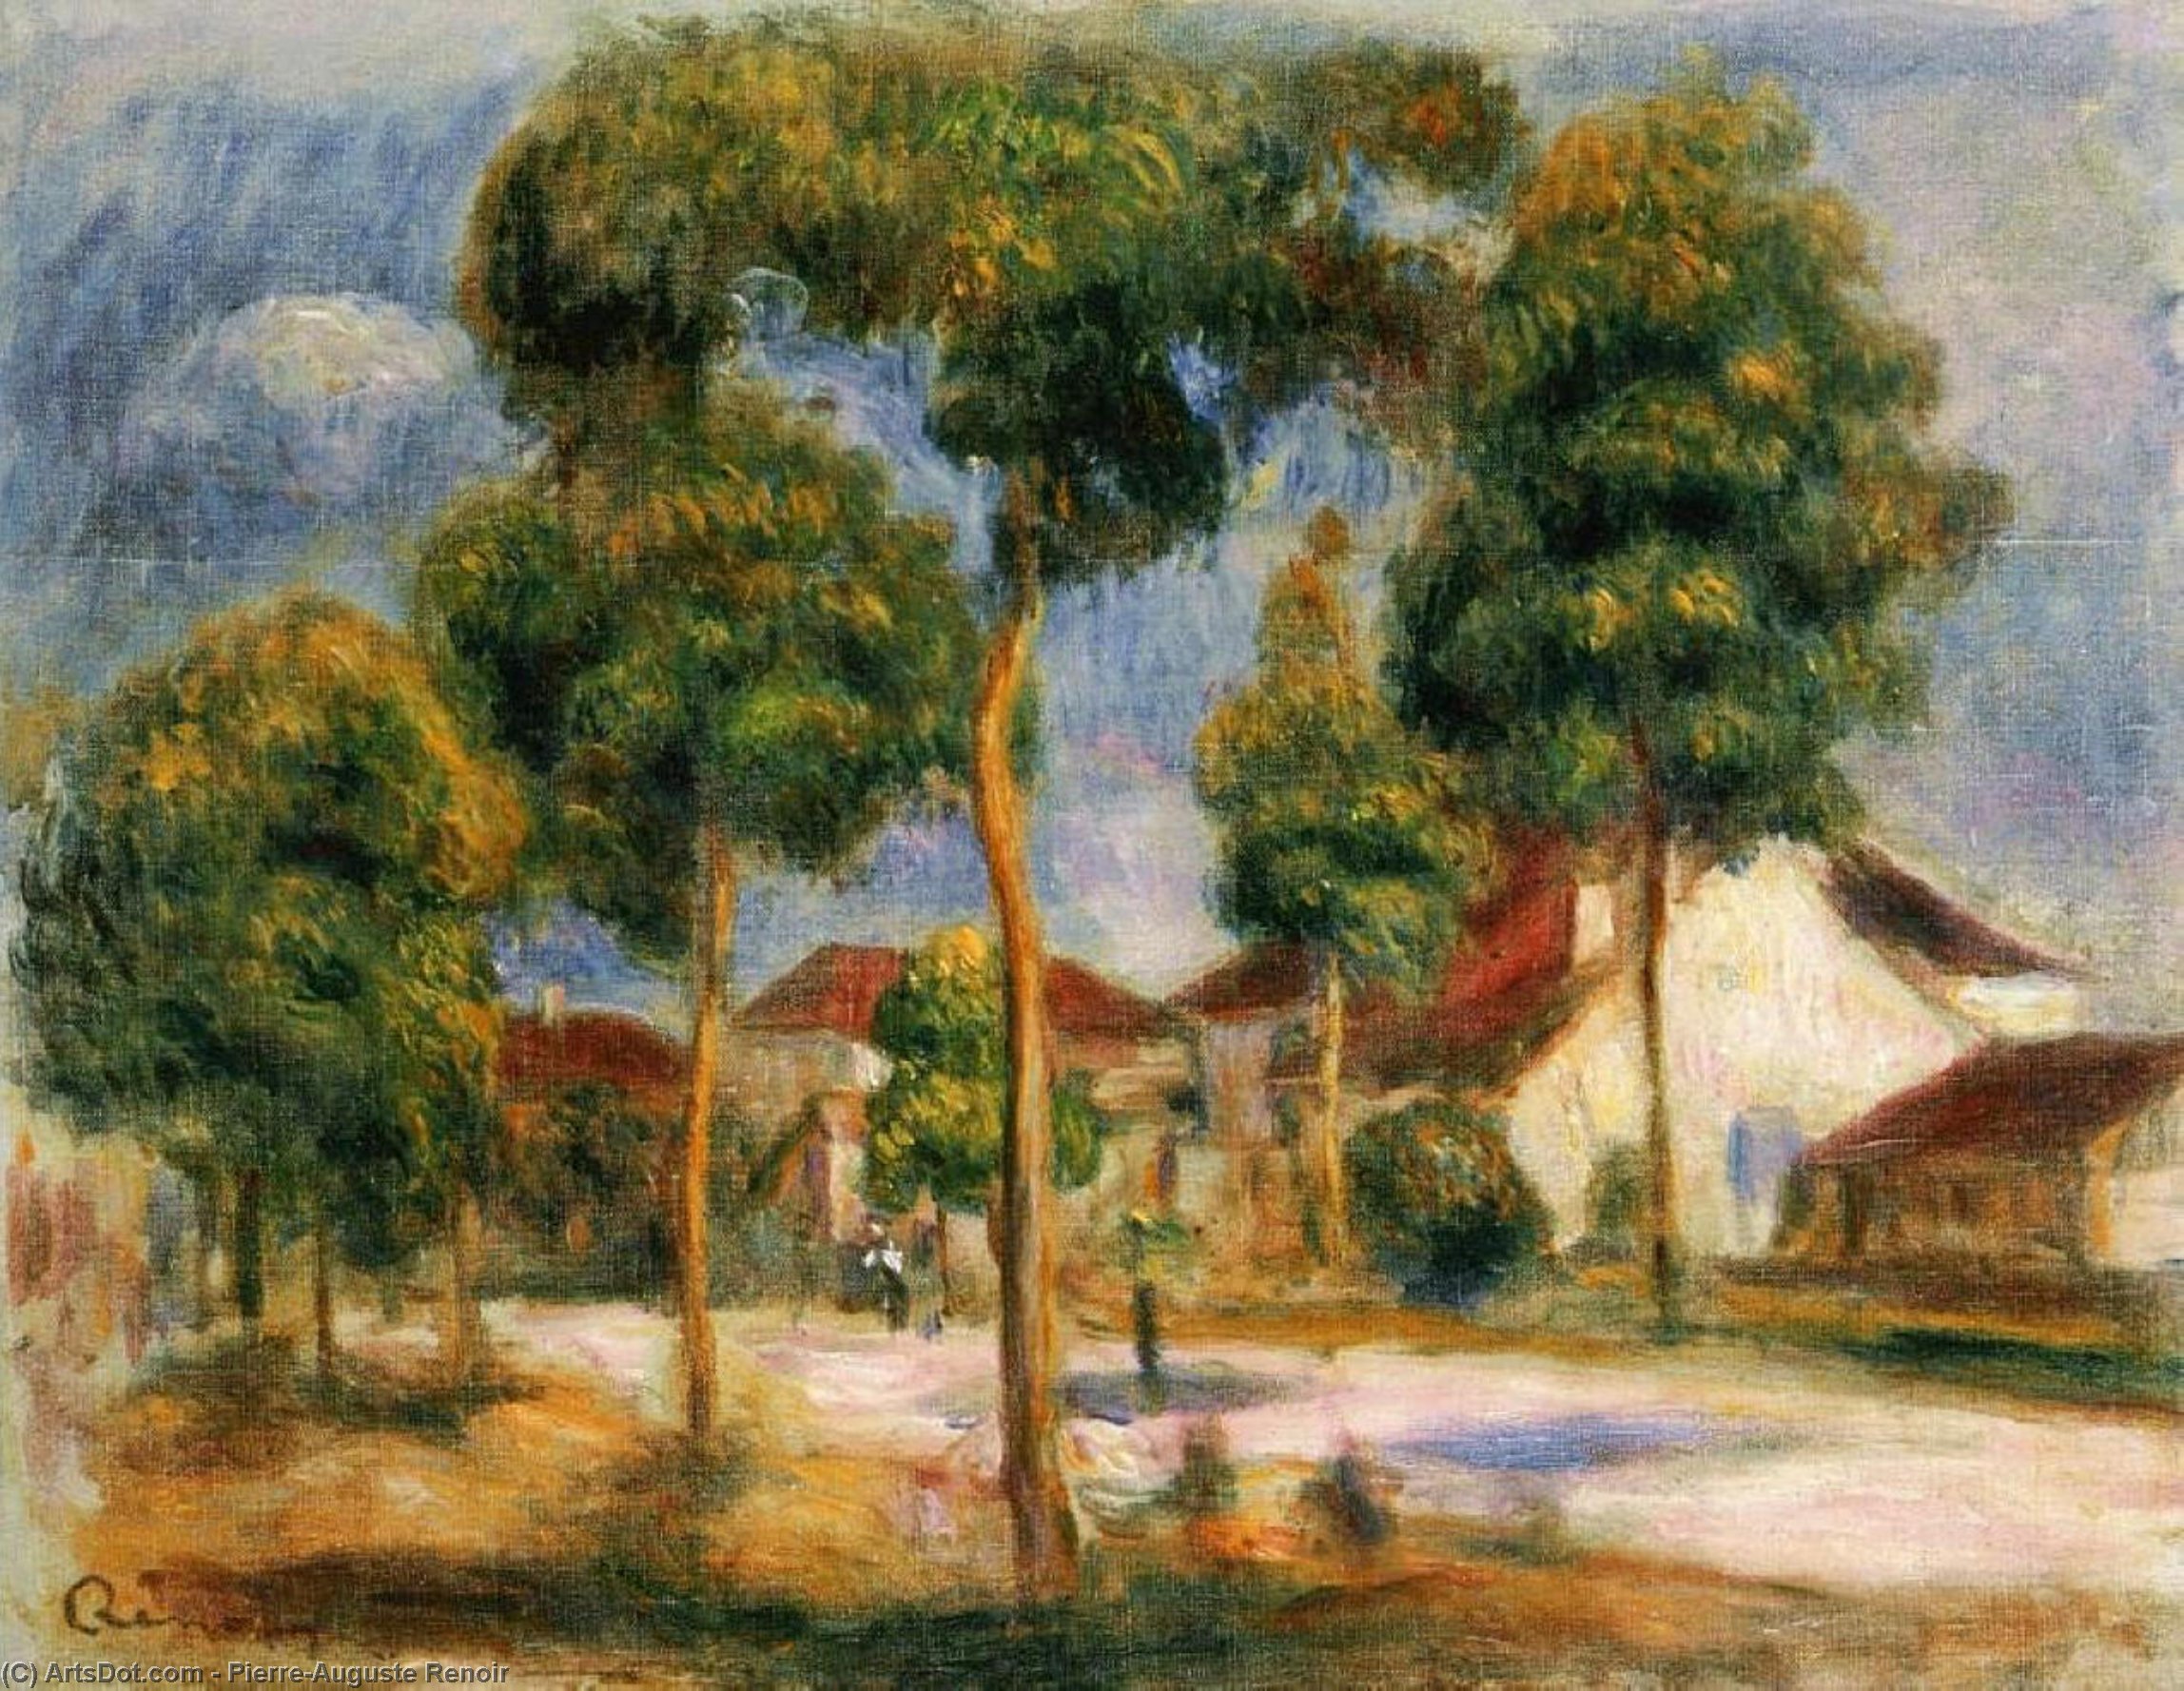 WikiOO.org - Encyclopedia of Fine Arts - Festés, Grafika Pierre-Auguste Renoir - A Sunny Street